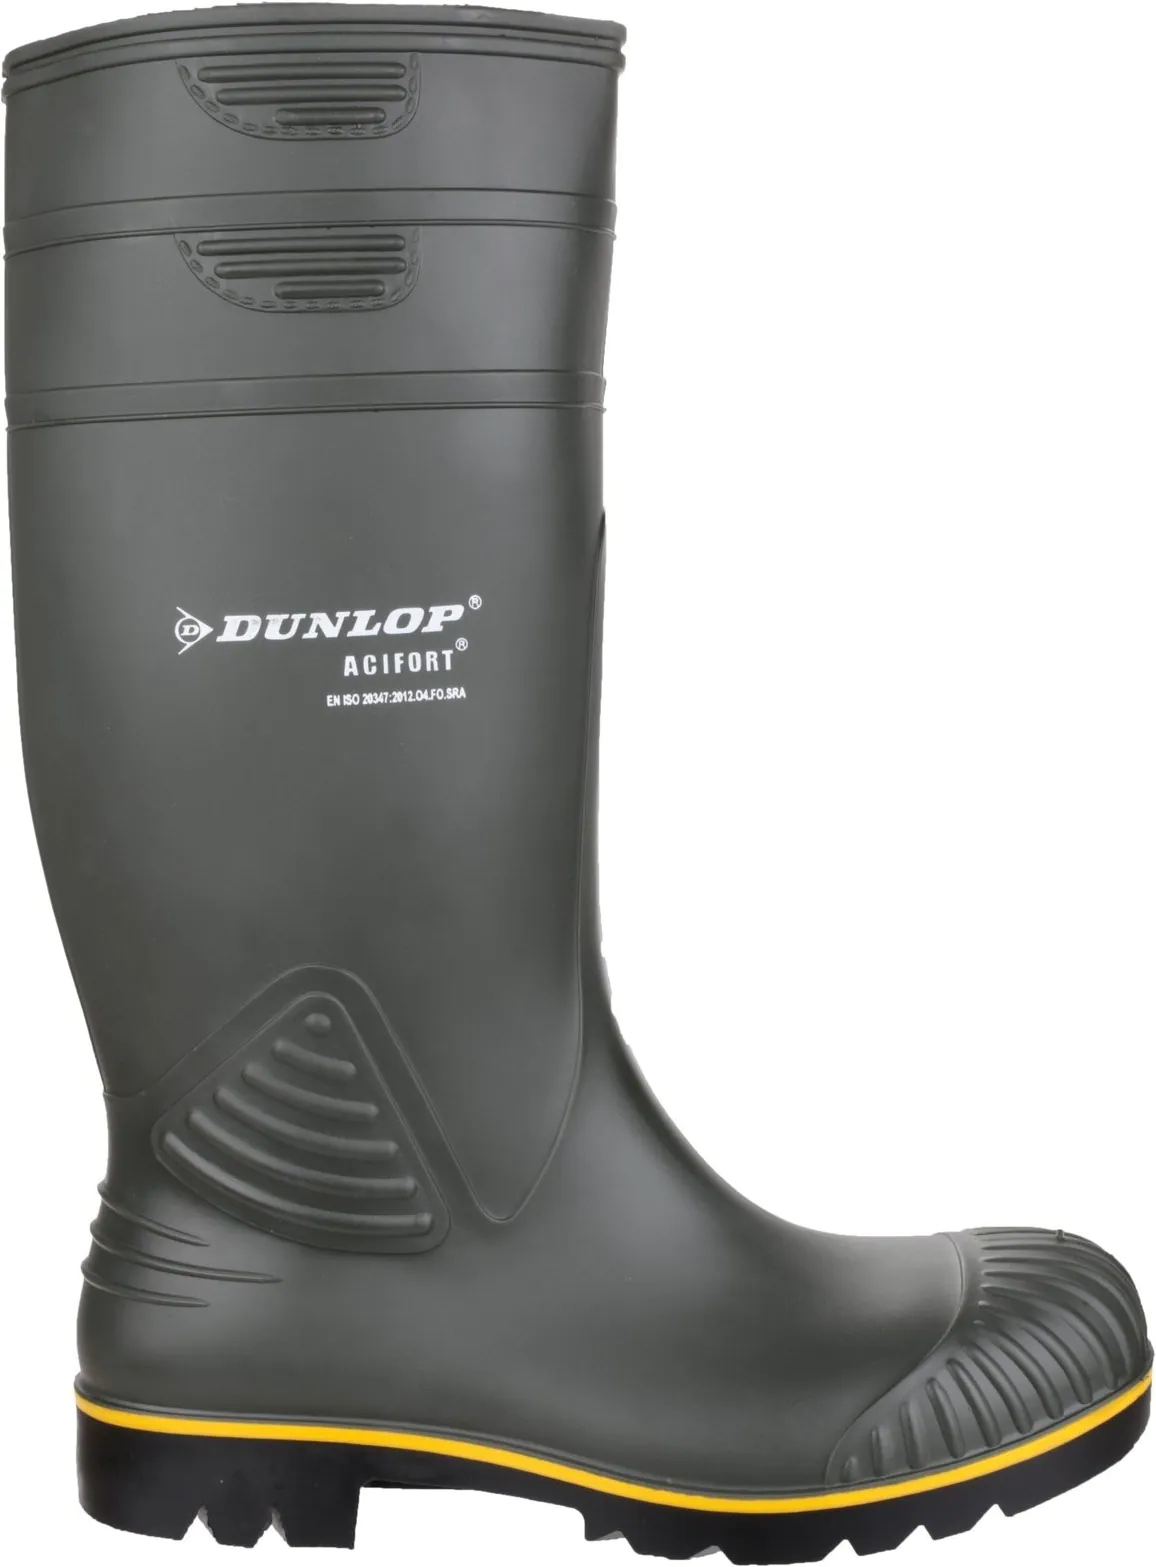 Dunlop Acifort rubber boot Durable